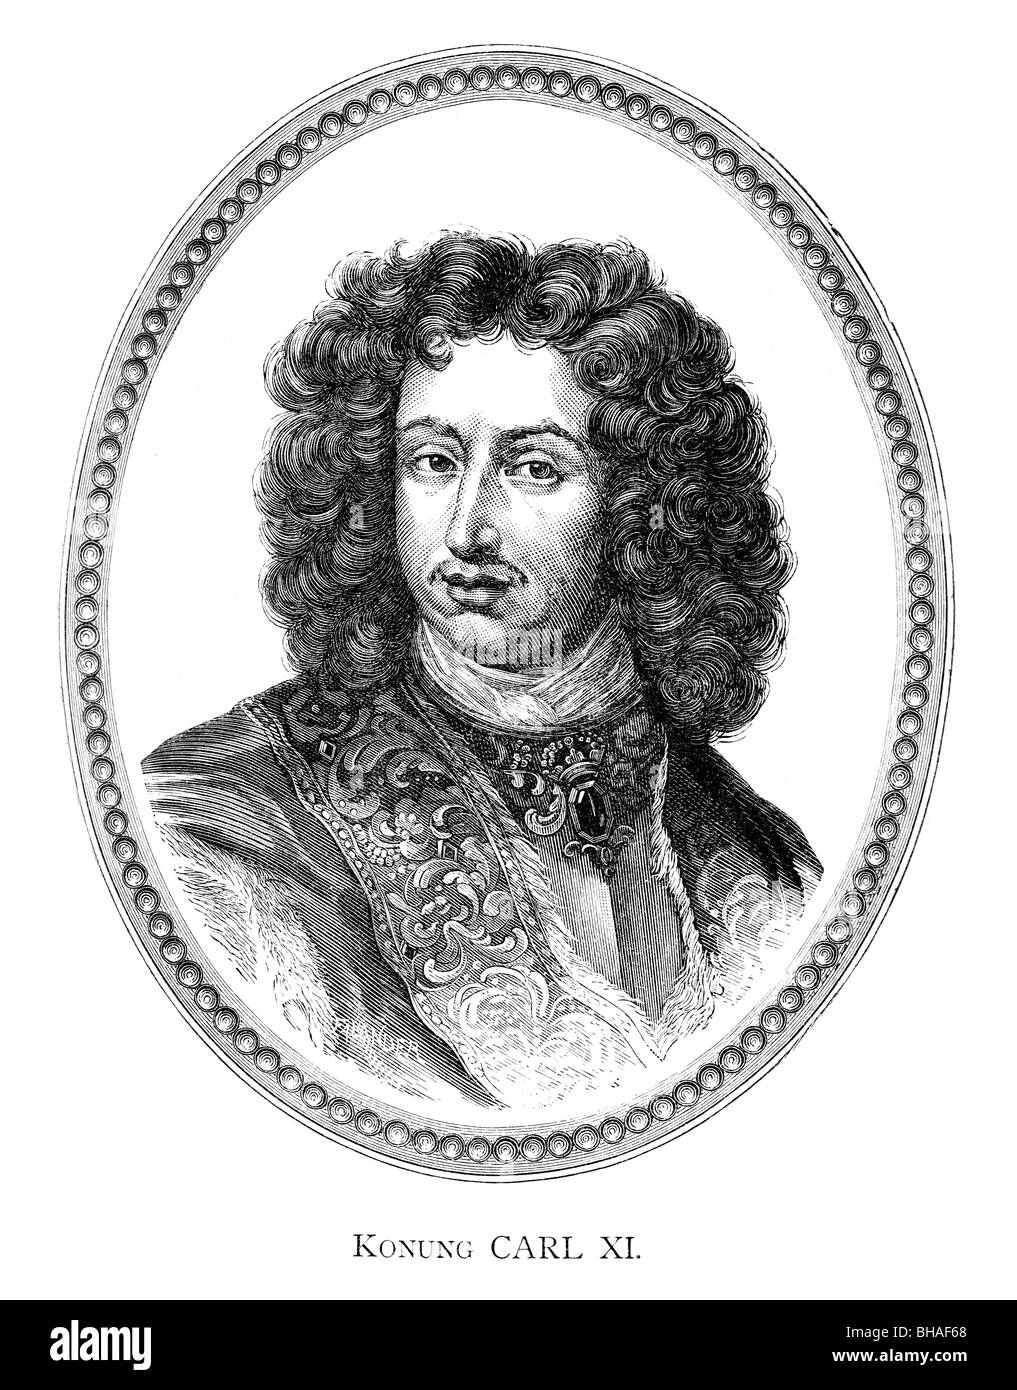 Carlos XI de Suecia (en sueco: Karl XI, el 24 de noviembre de 1655 - 5 de abril de 1697) fue el rey de Suecia desde 1660 hasta su muerte Foto de stock